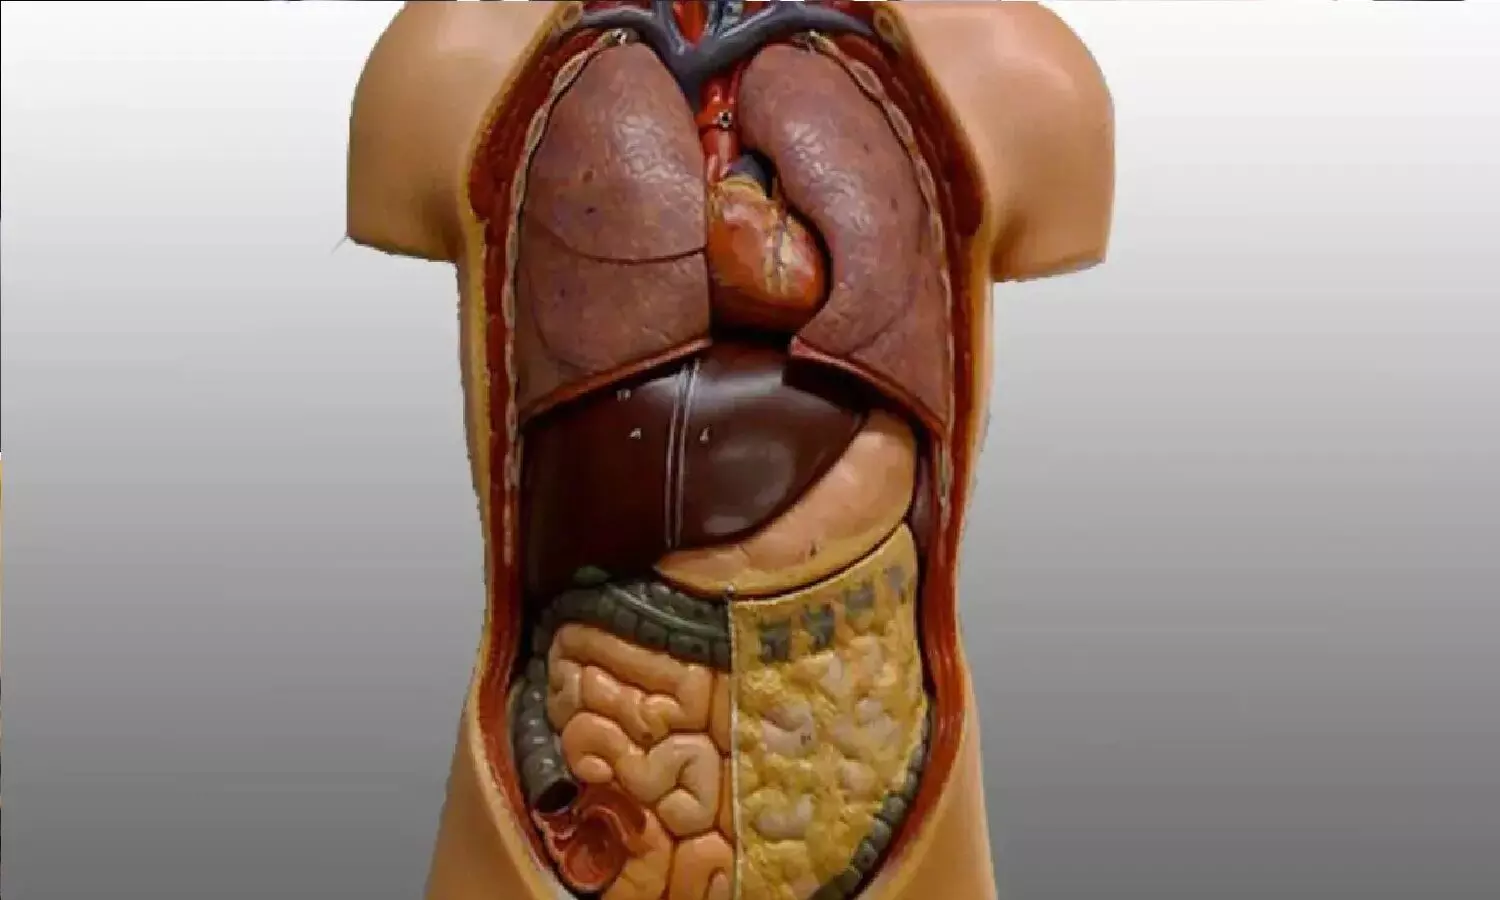 How To Detox Internal Organs: शरीर के अंदर जमा कचरा बाहर निकालने का तरीका जान लो